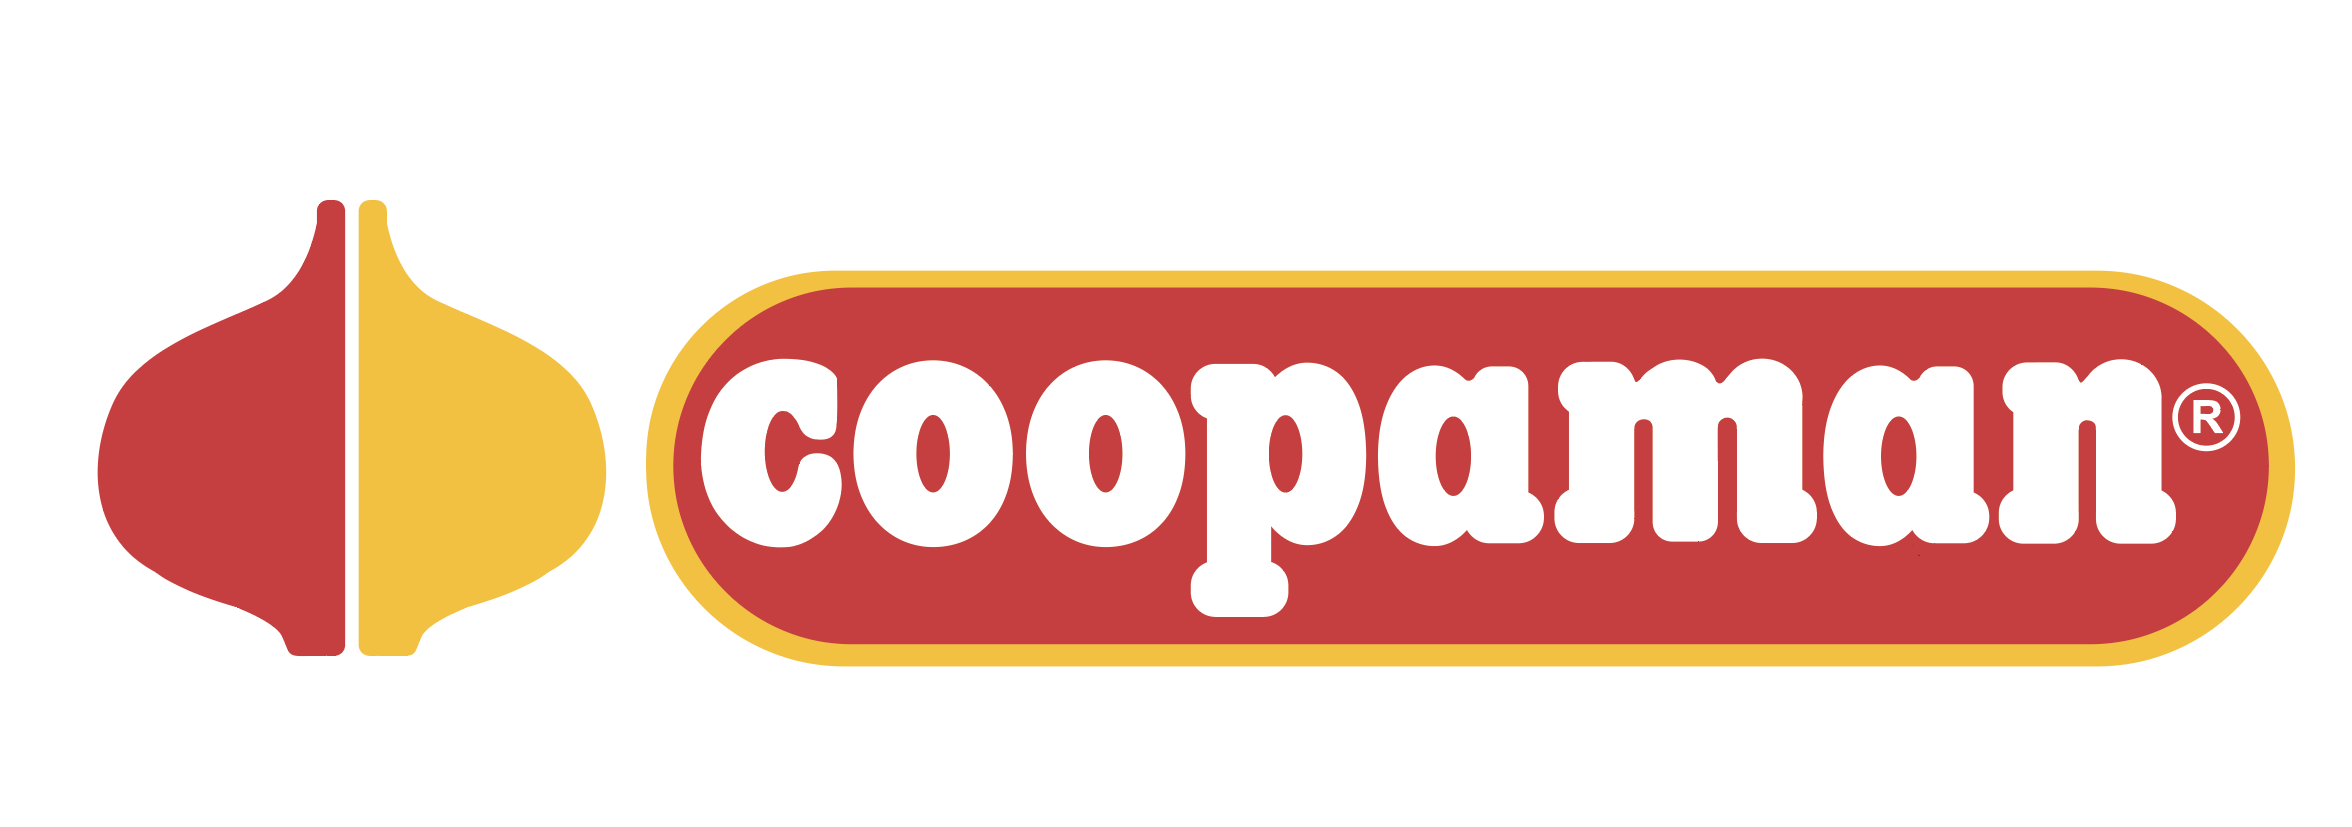 coopaman